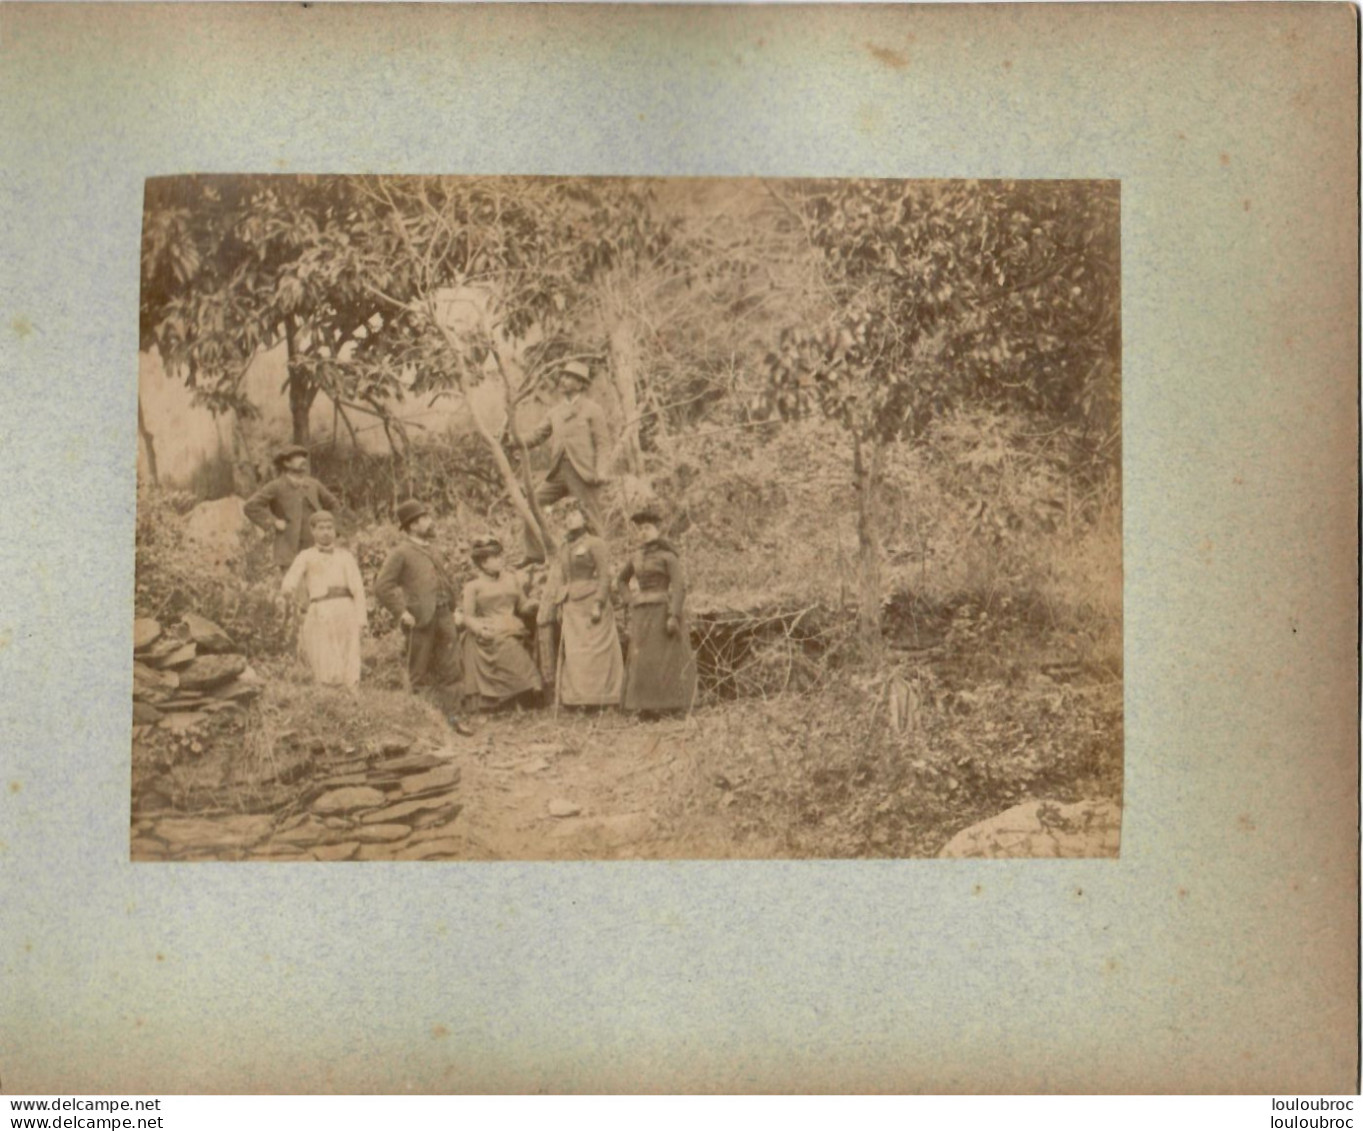 ALGERIE FIN 19e  SIECLE  PHOTO ORIGINALE SUR CARTON FORMAT DE LA PHOTO 17X12CM R4 - Old (before 1900)